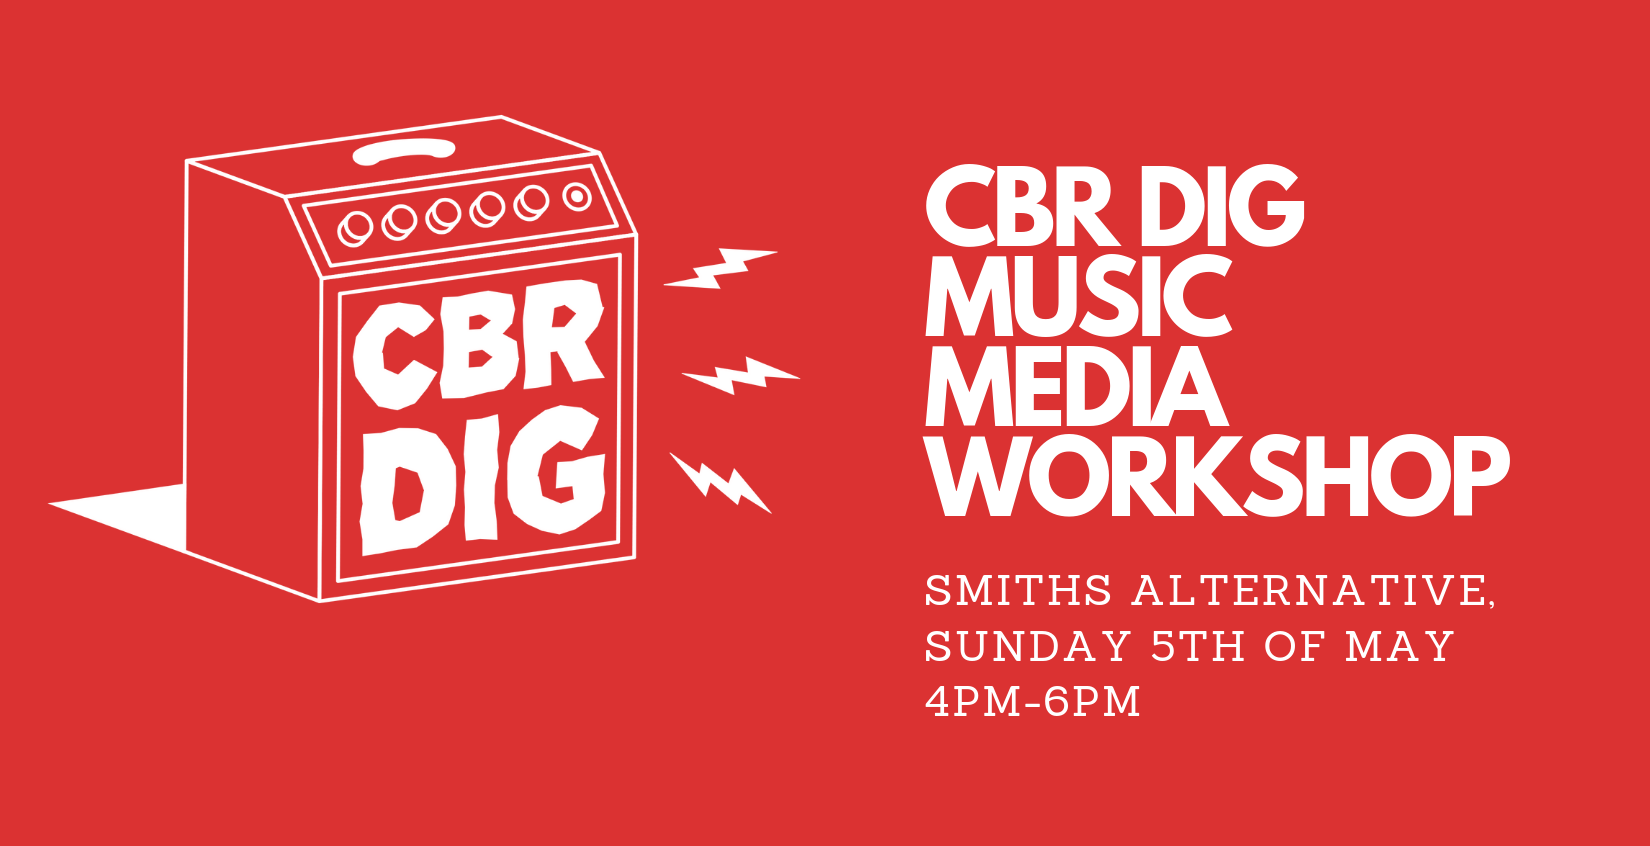 CBR DIG Music Media Workshop